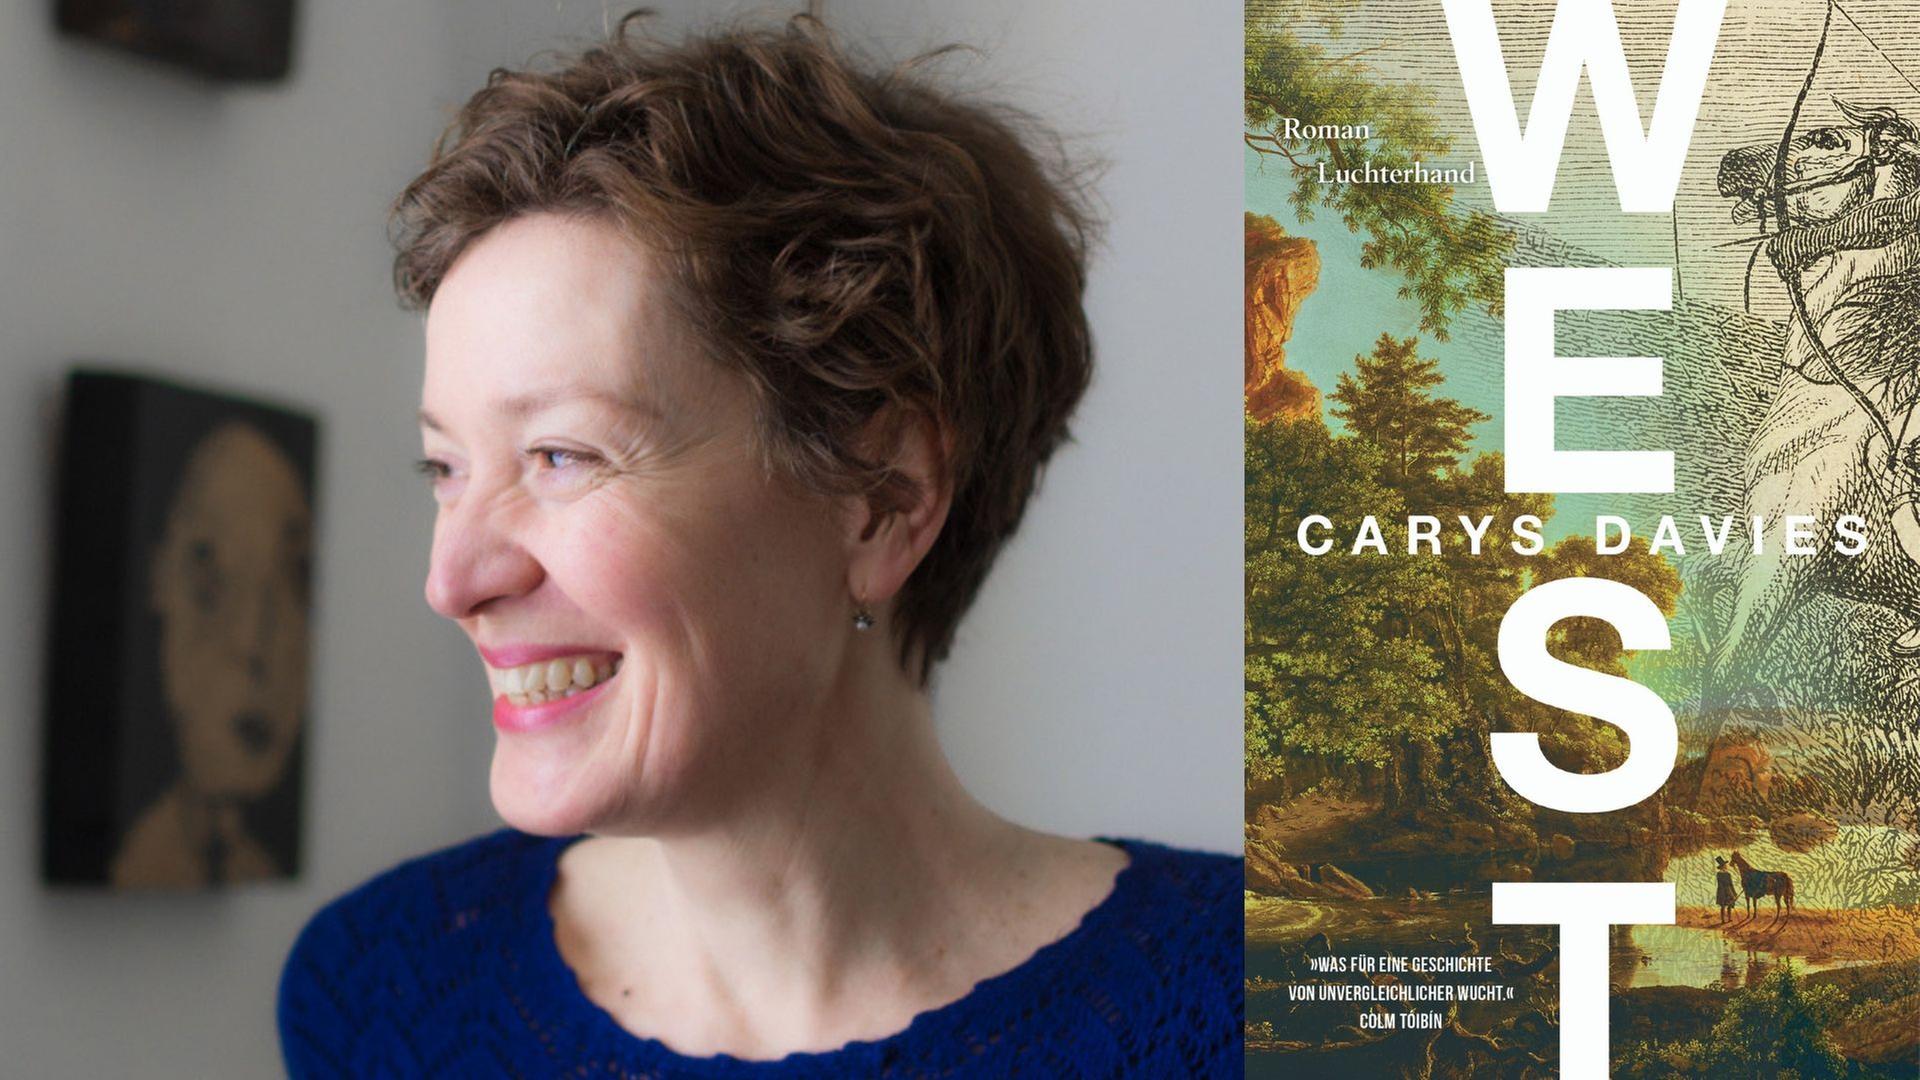 Zu sehen ist die Autorin Carys Davies und das Cover ihres Romans "West".